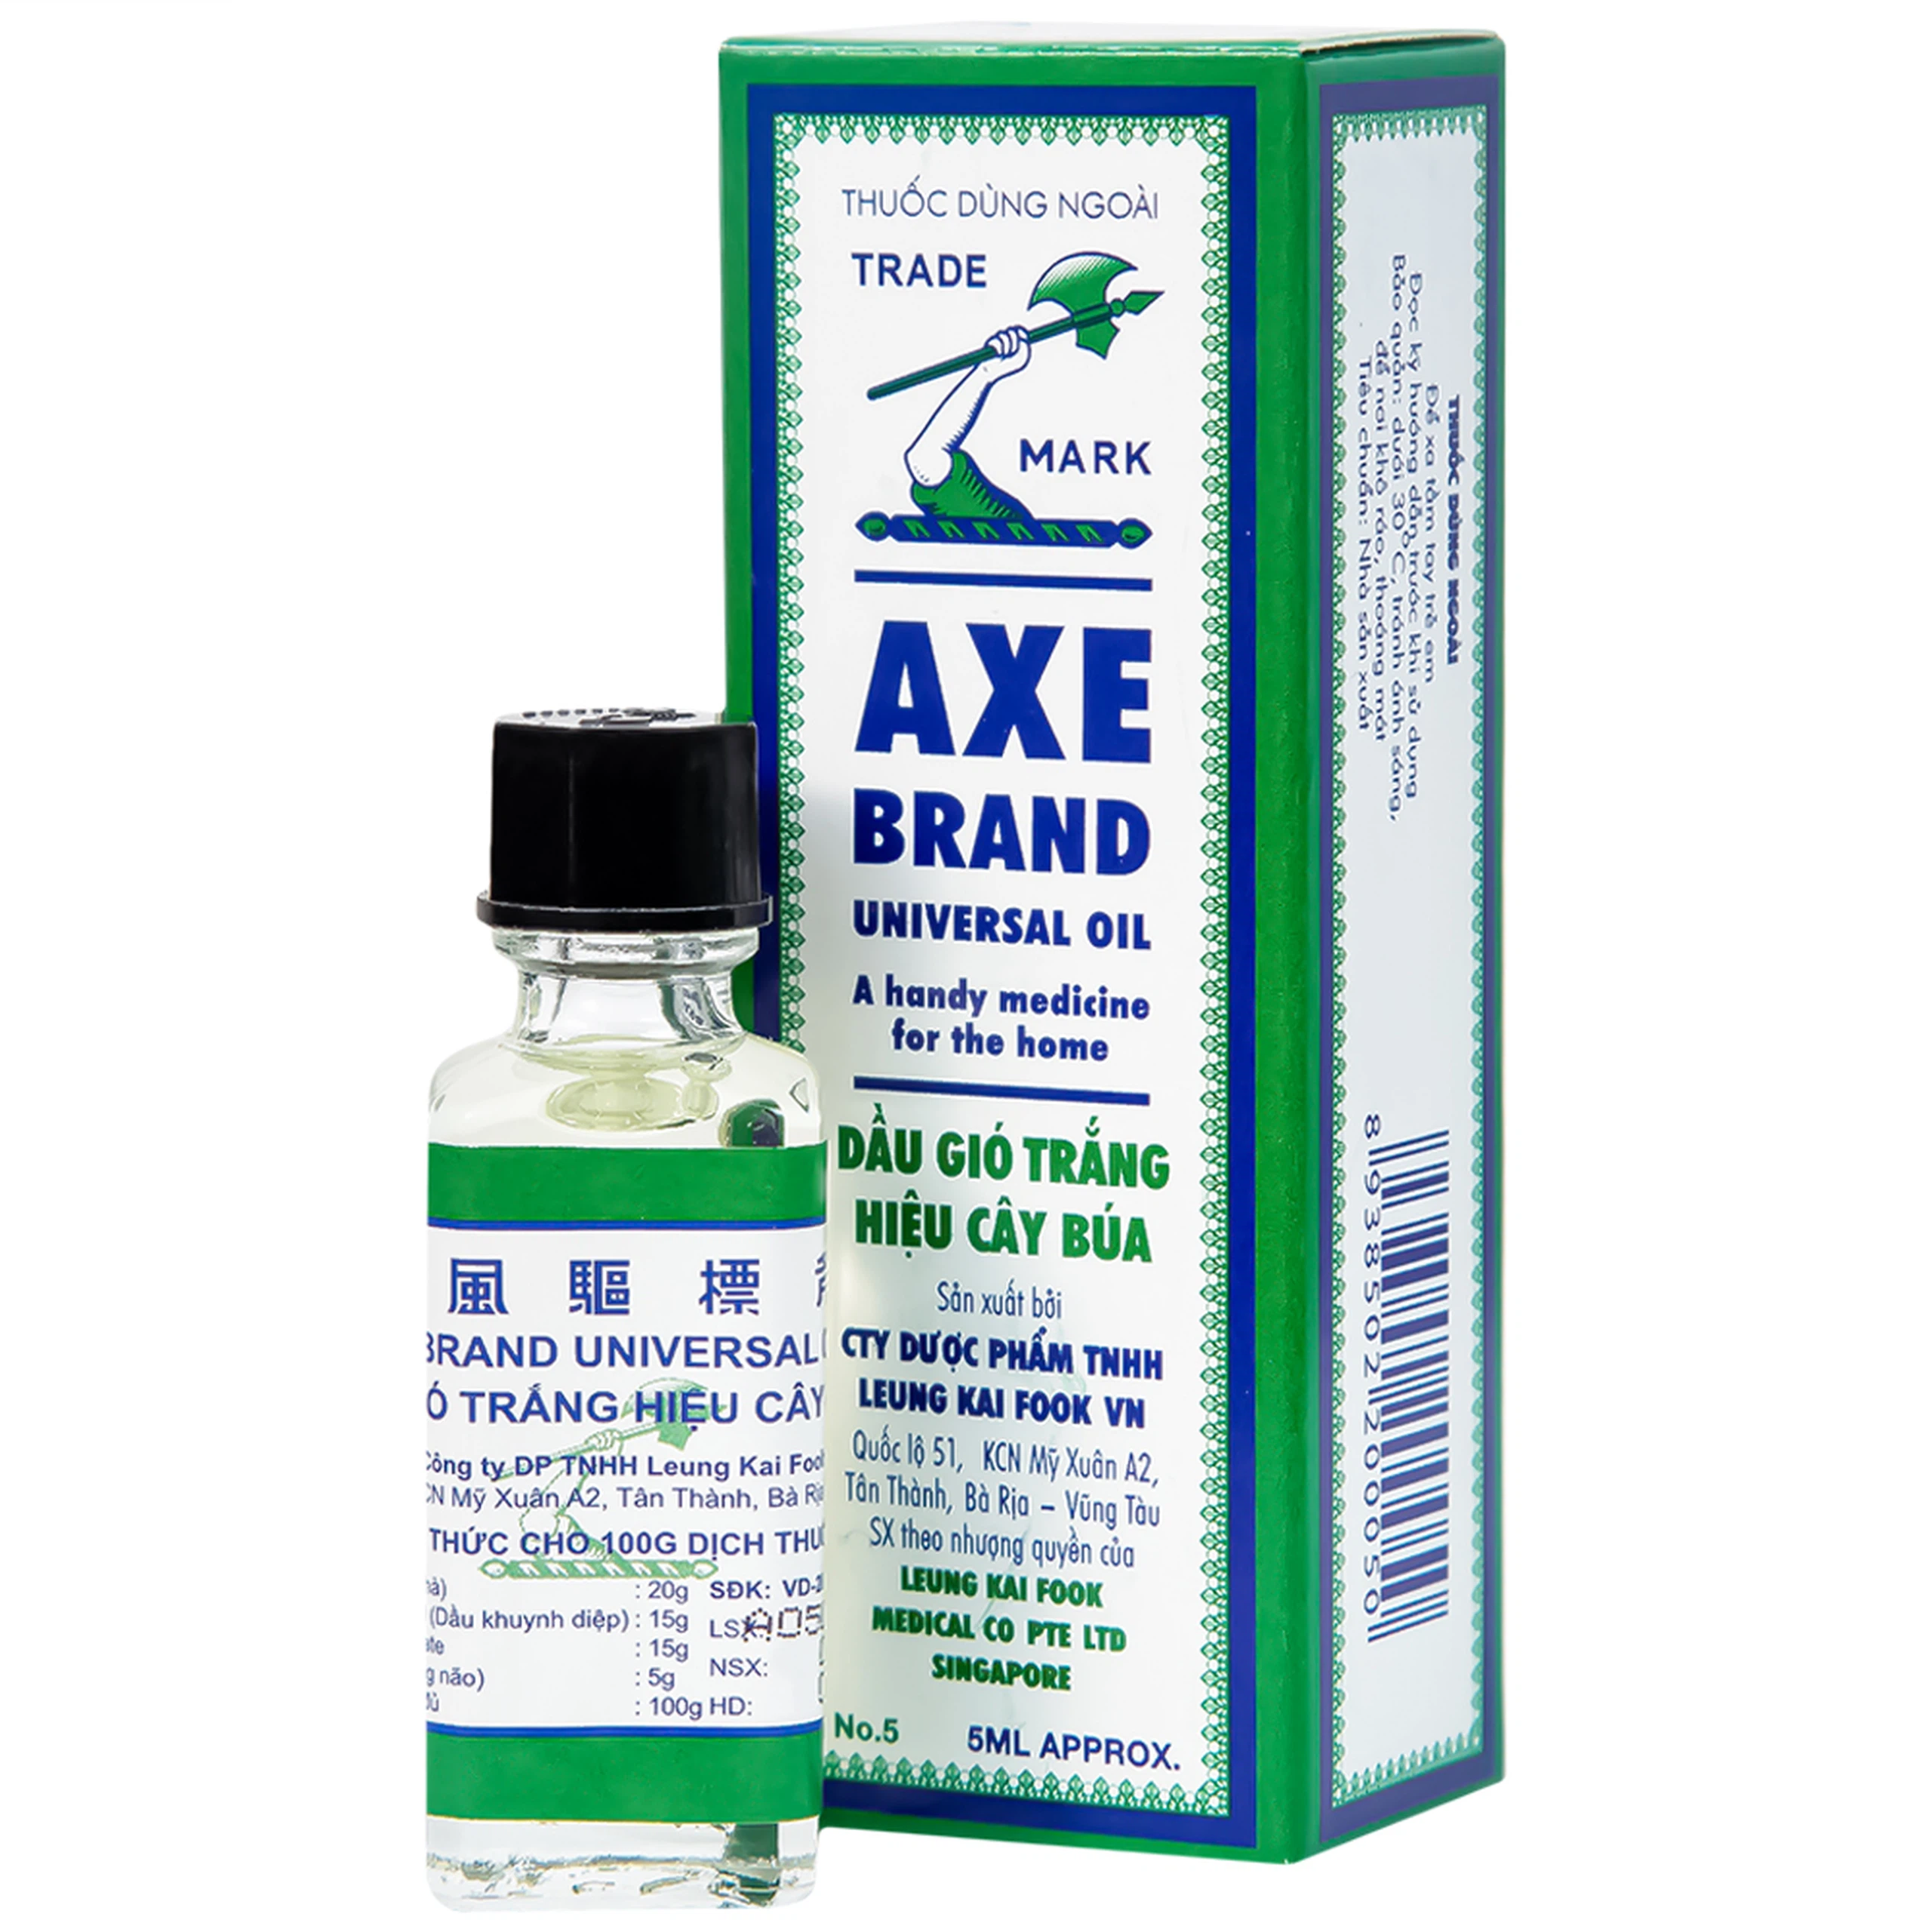 Dầu gió trắng Cây Búa Axe Brand Universal Oil giảm các triệu chứng cảm lạnh, ho khan (5ml)